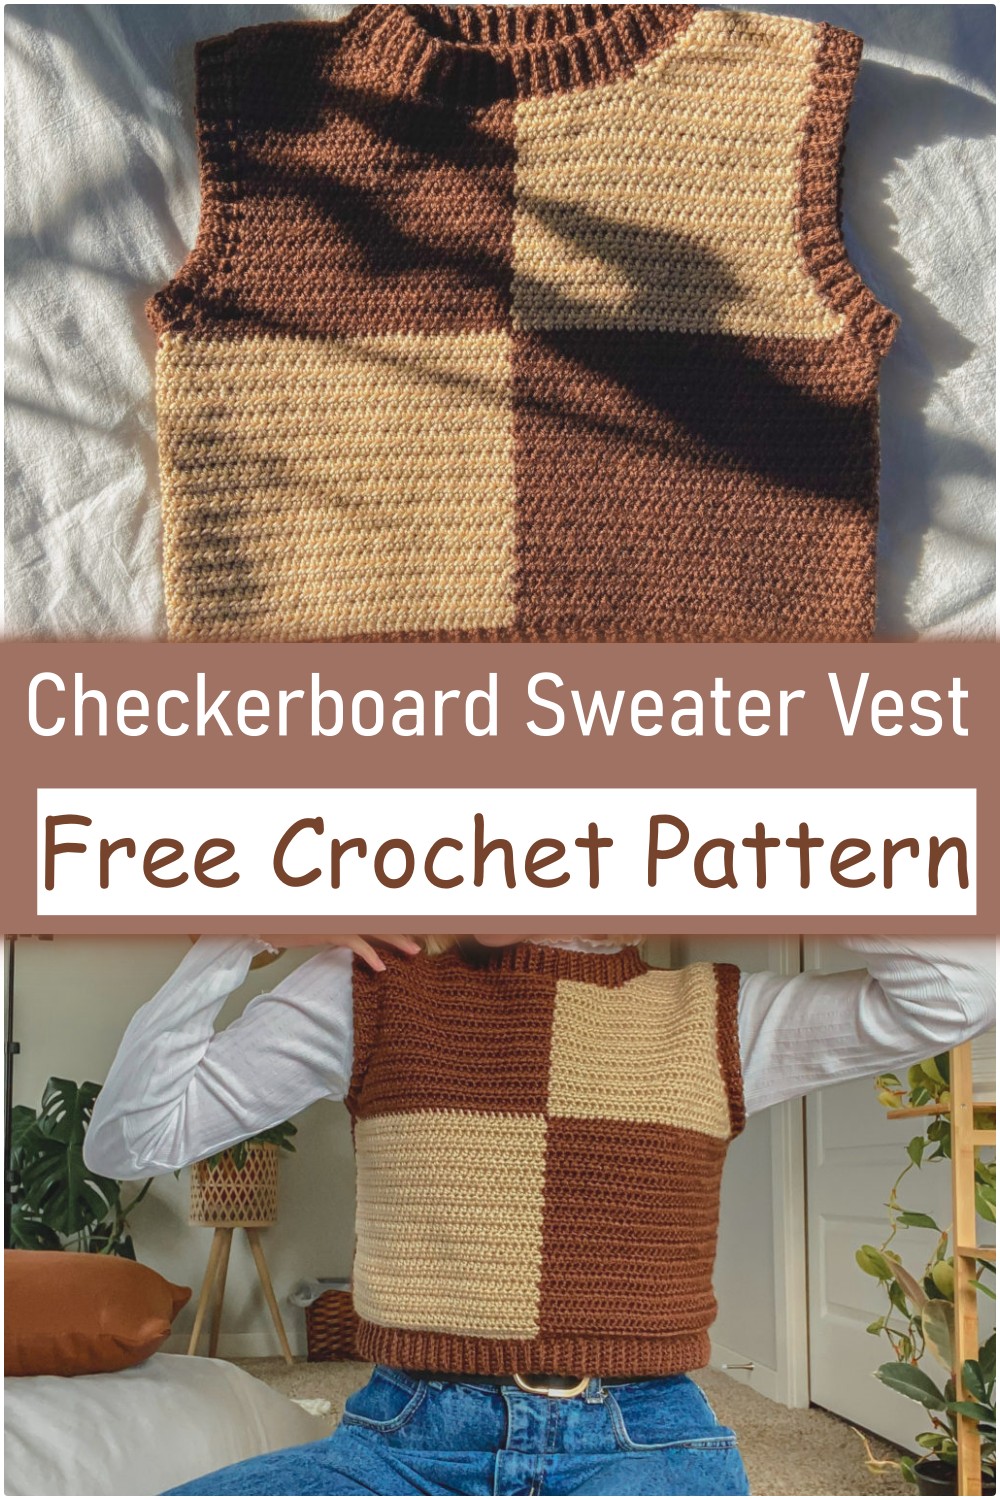 Checkerboard Sweater Vest Idea To Crochet